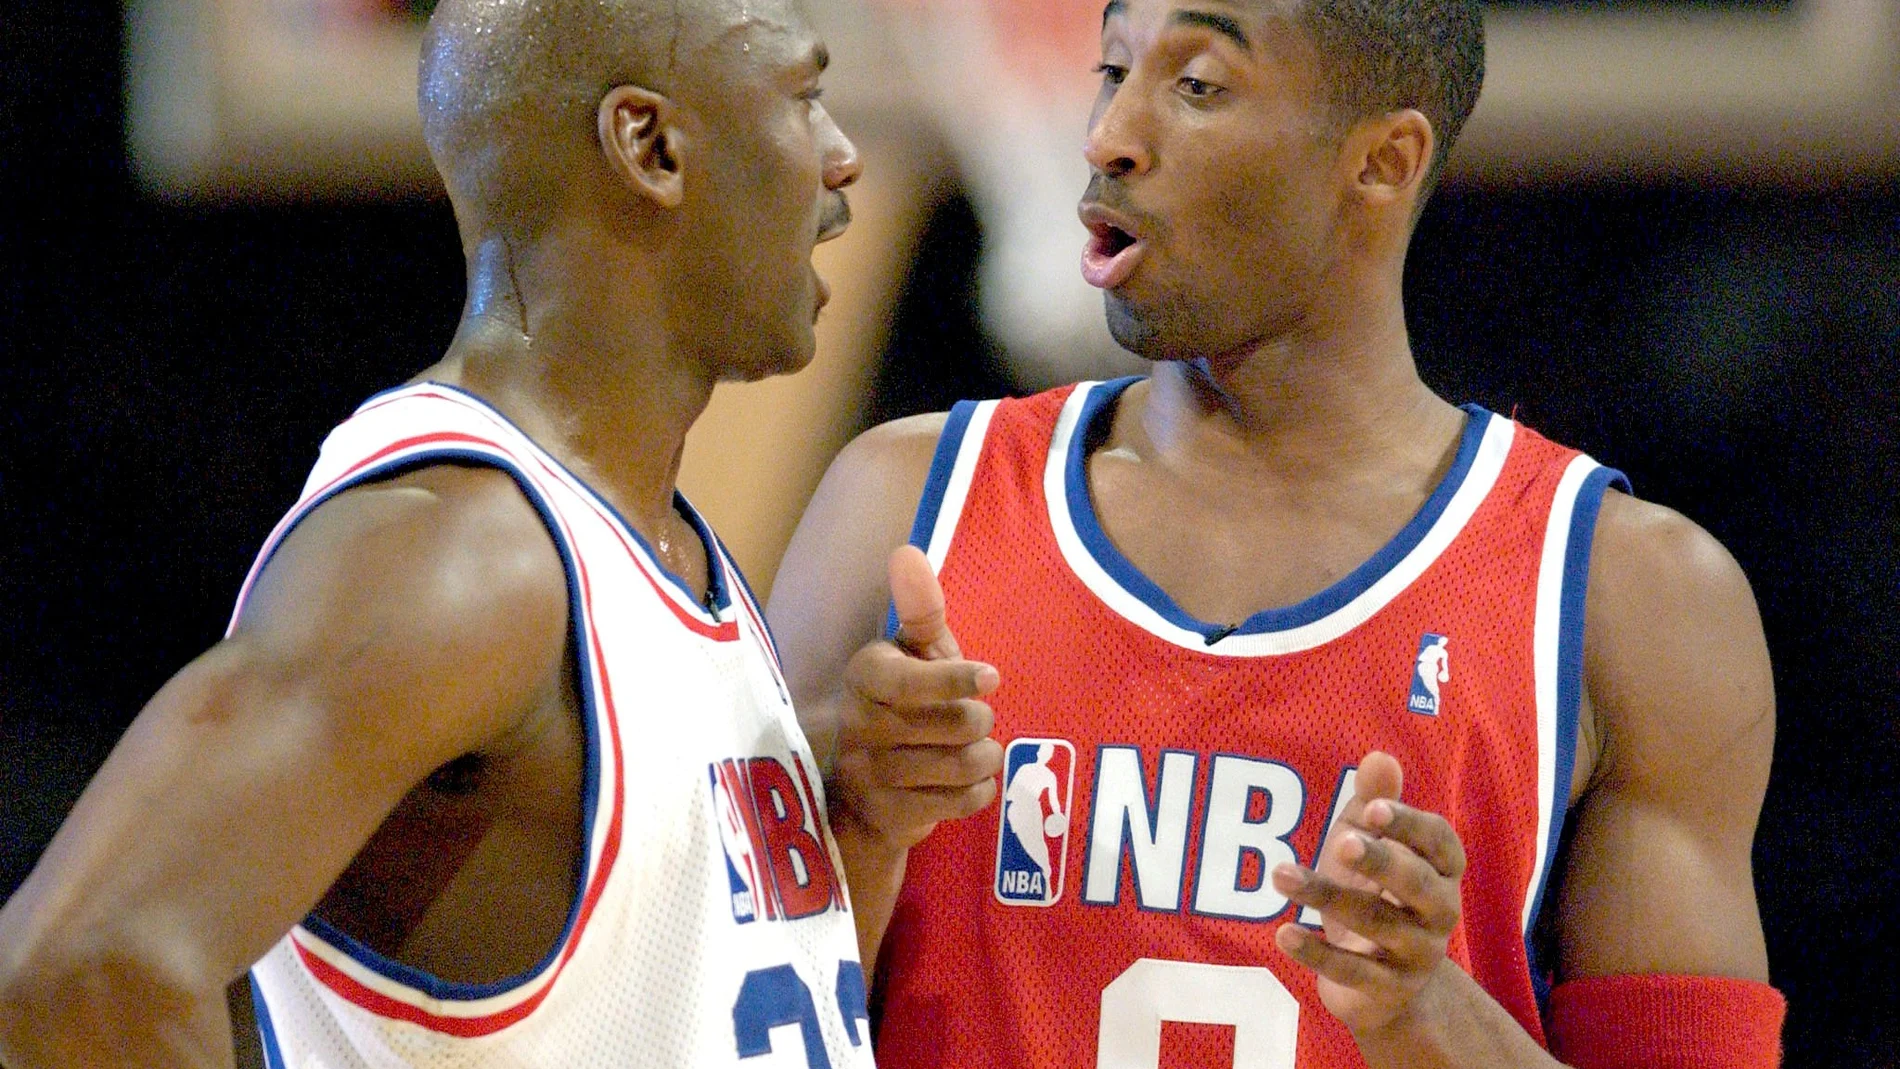 Energizar Labe combate El vídeo que demuestra cómo Kobe Bryant clonó a Michael Jordan